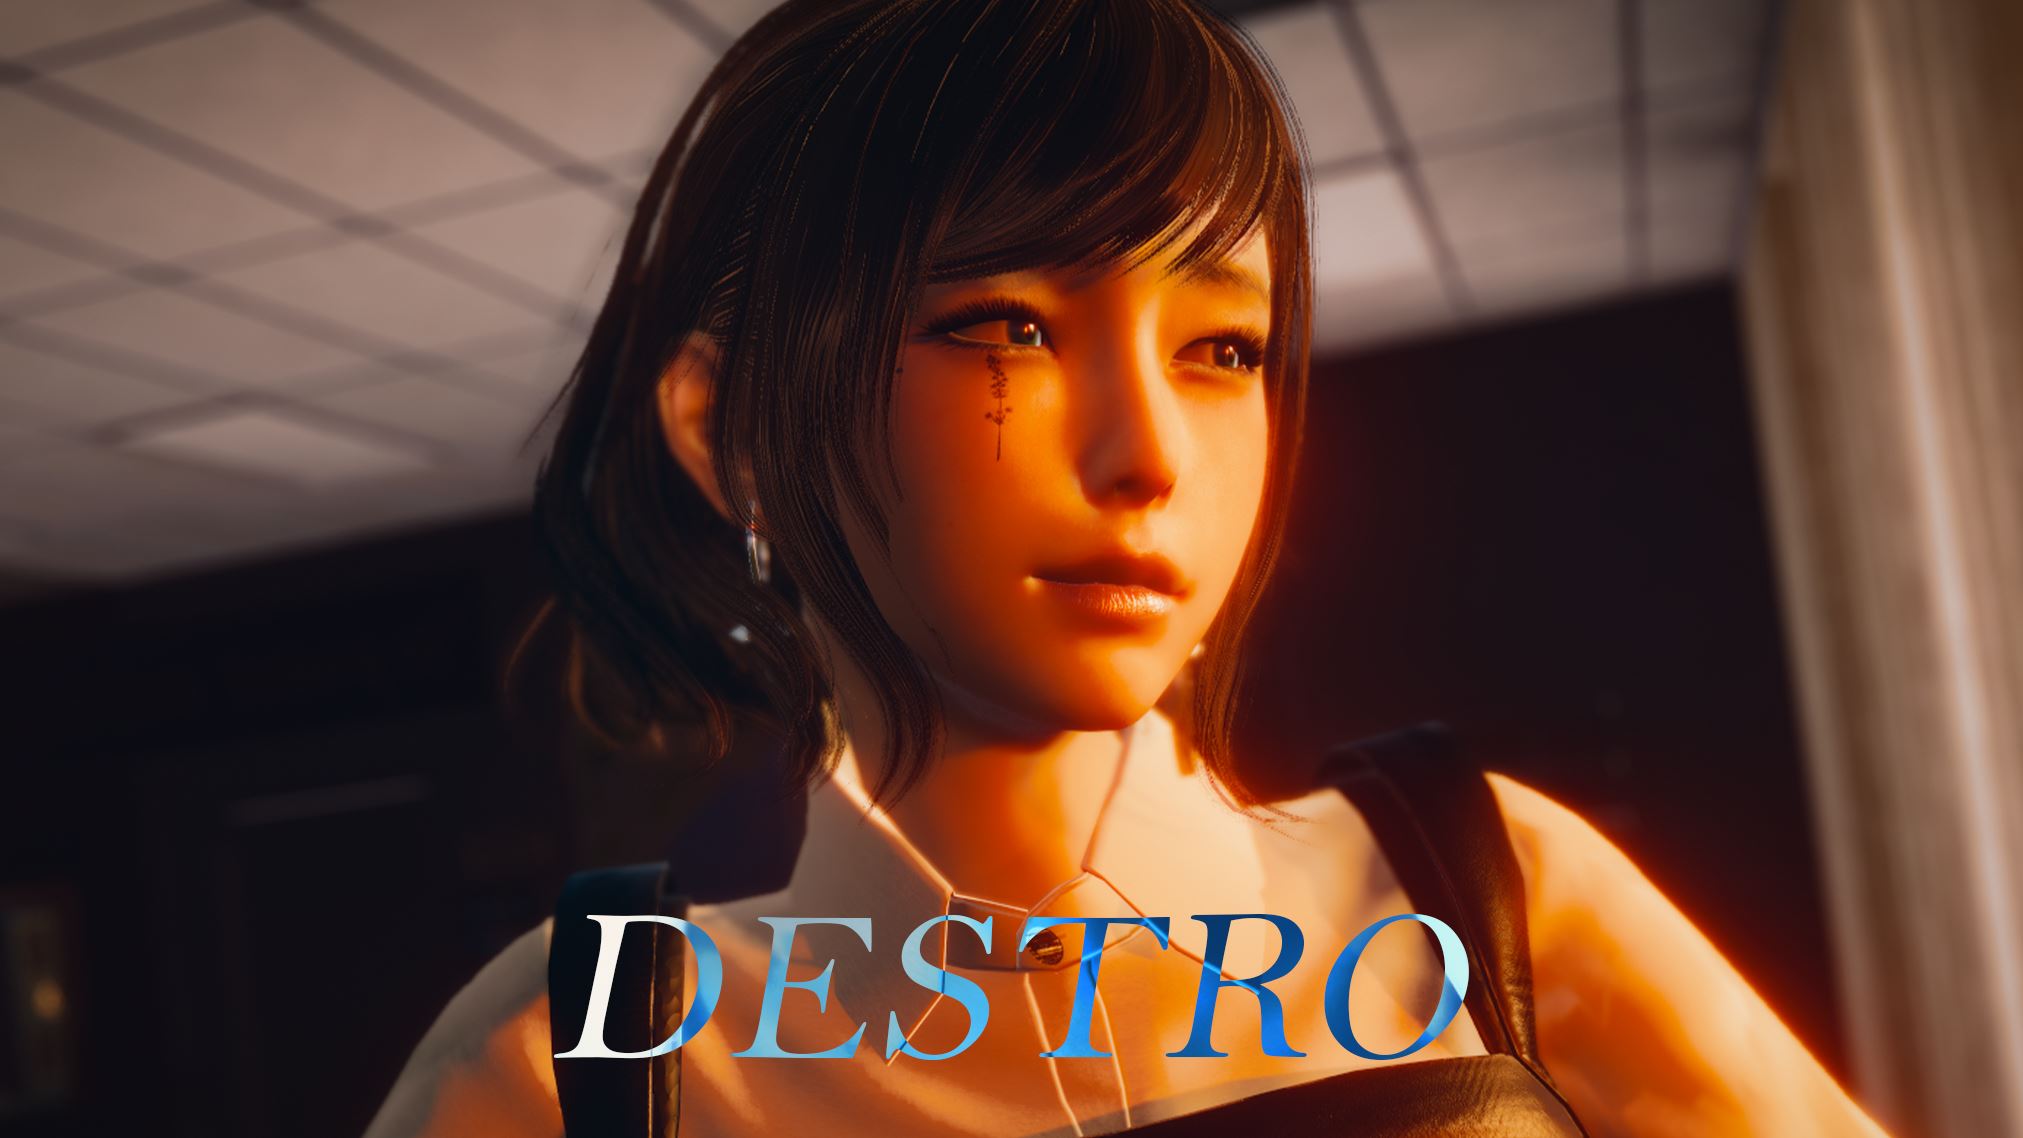 Destro porn xxx game download cover